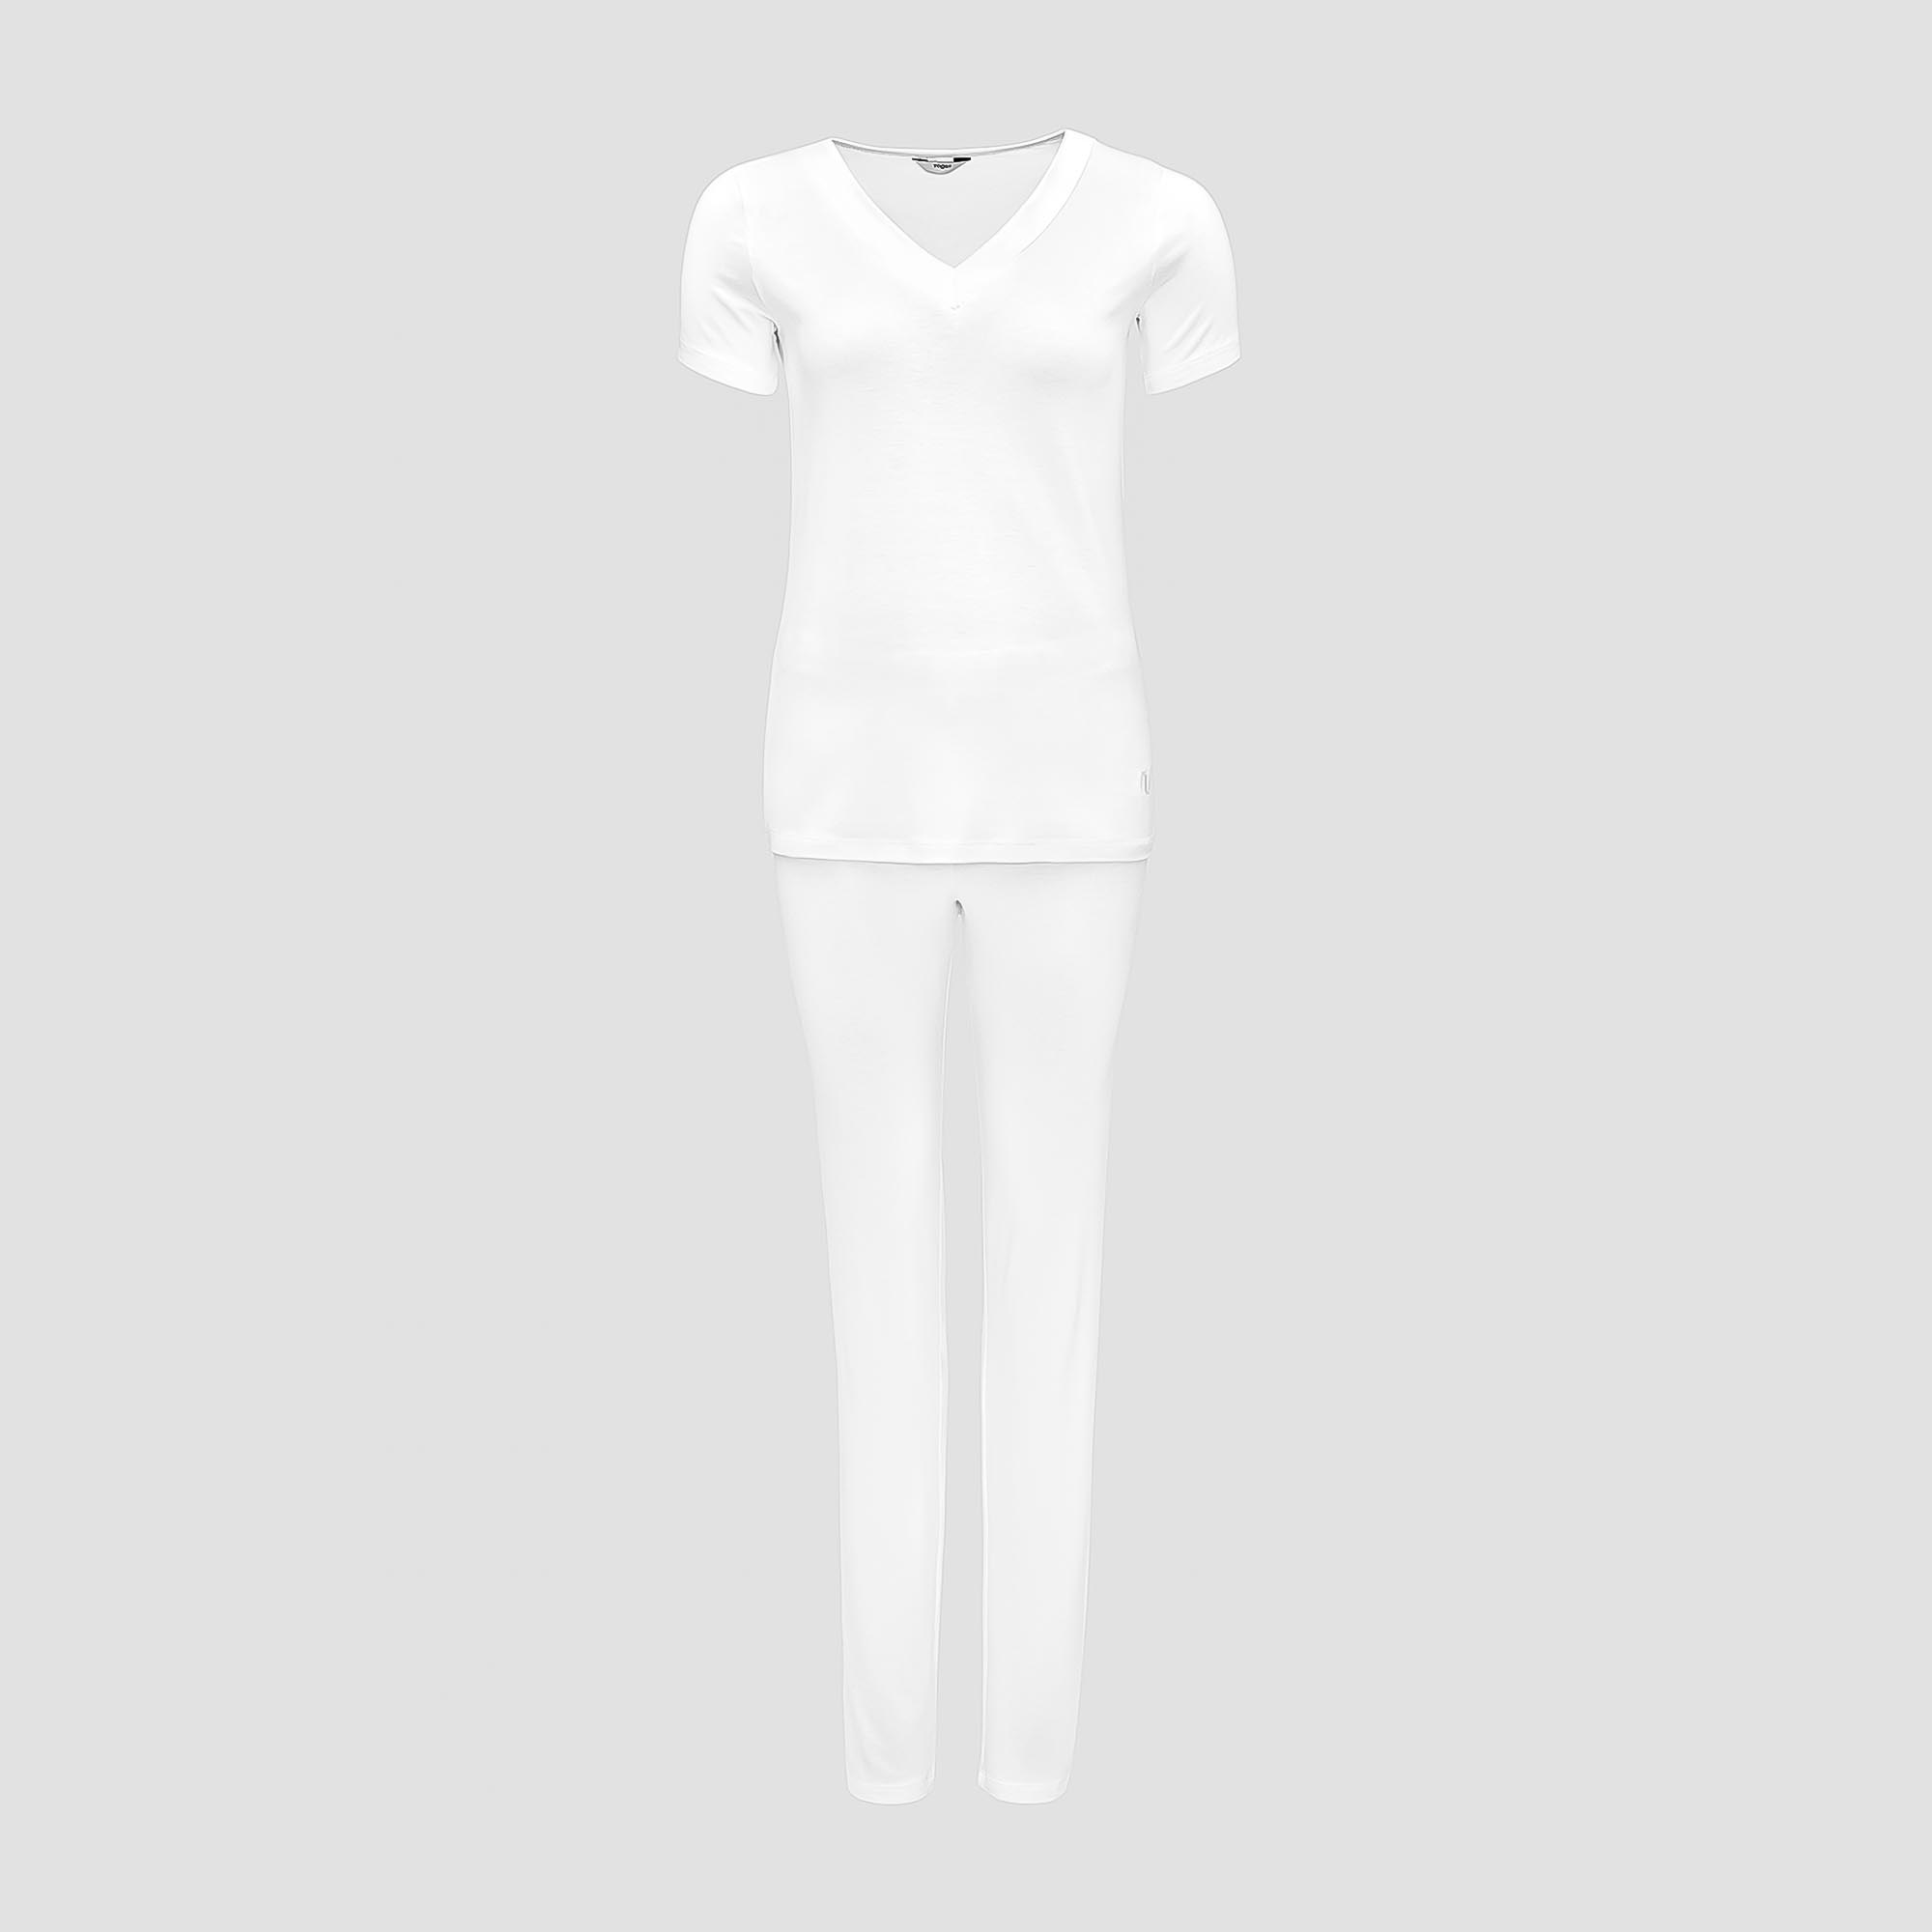 Пижама Togas Ингелла белая женская L(48) 2 предмета жен пижама с шортами инь янь белый р 48